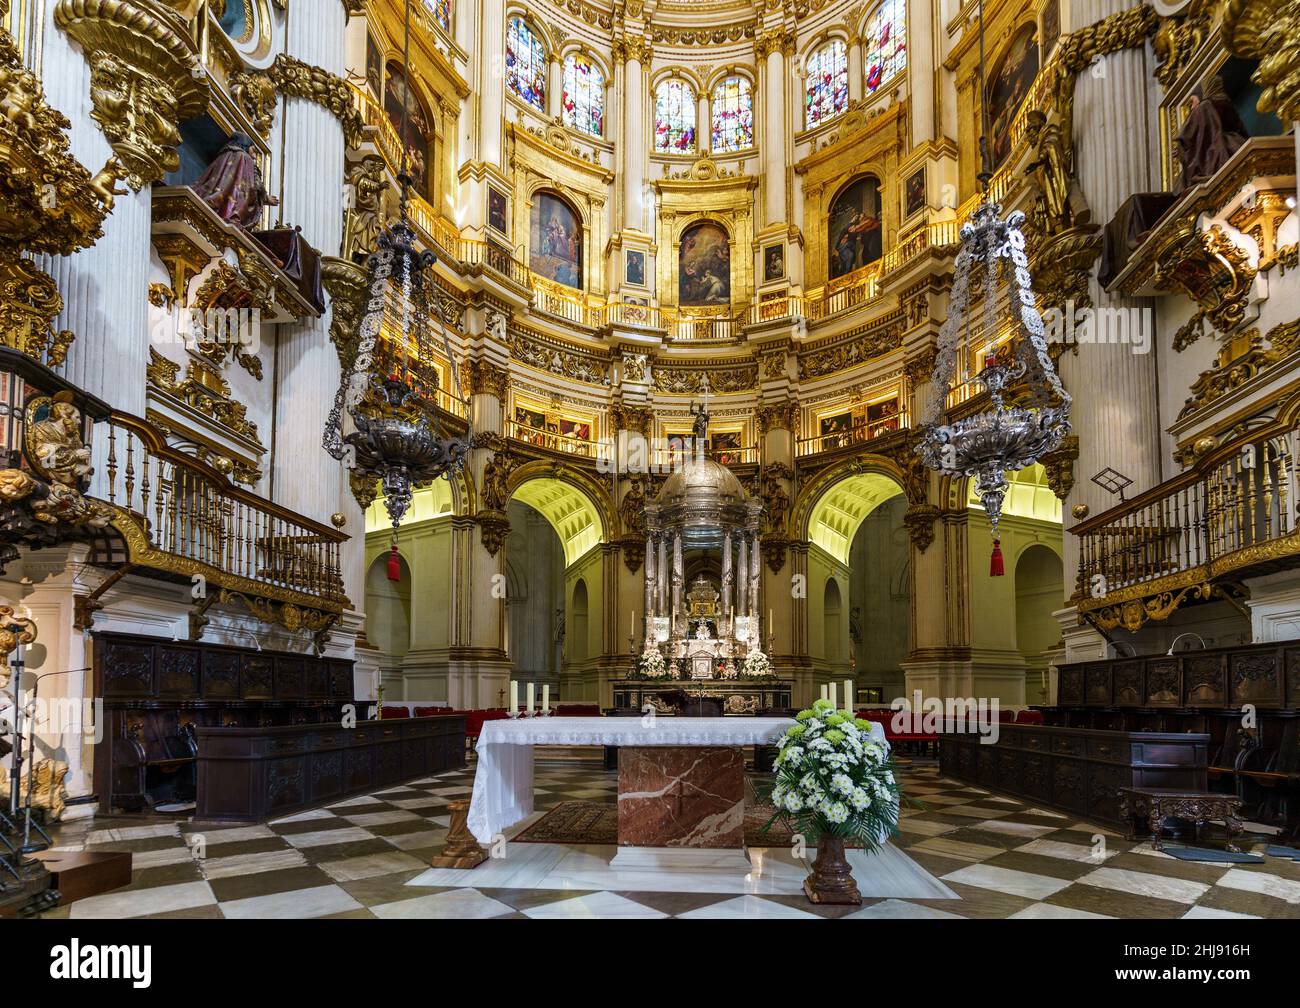 Granada, Spanien - November 11 2021: Innenansicht der beeindruckenden Kathedrale von Granada und ihres Altars aus dem 16th. Jahrhundert. Es war buil Stockfoto